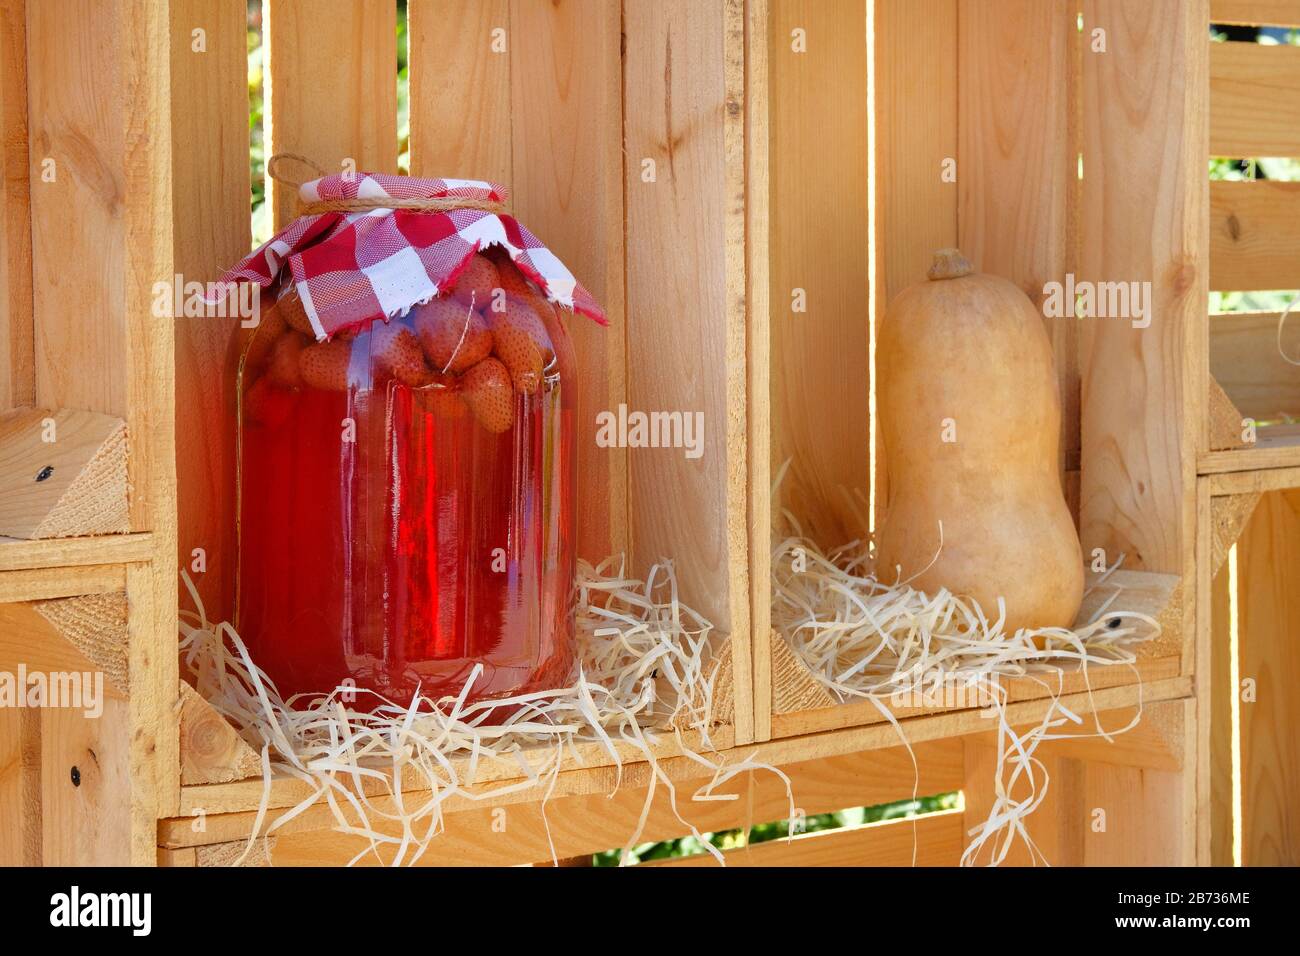 Conserve fatte in casa in vaso, bevanda alla fragola. Fermentato sano concetto di cibo naturale Foto Stock